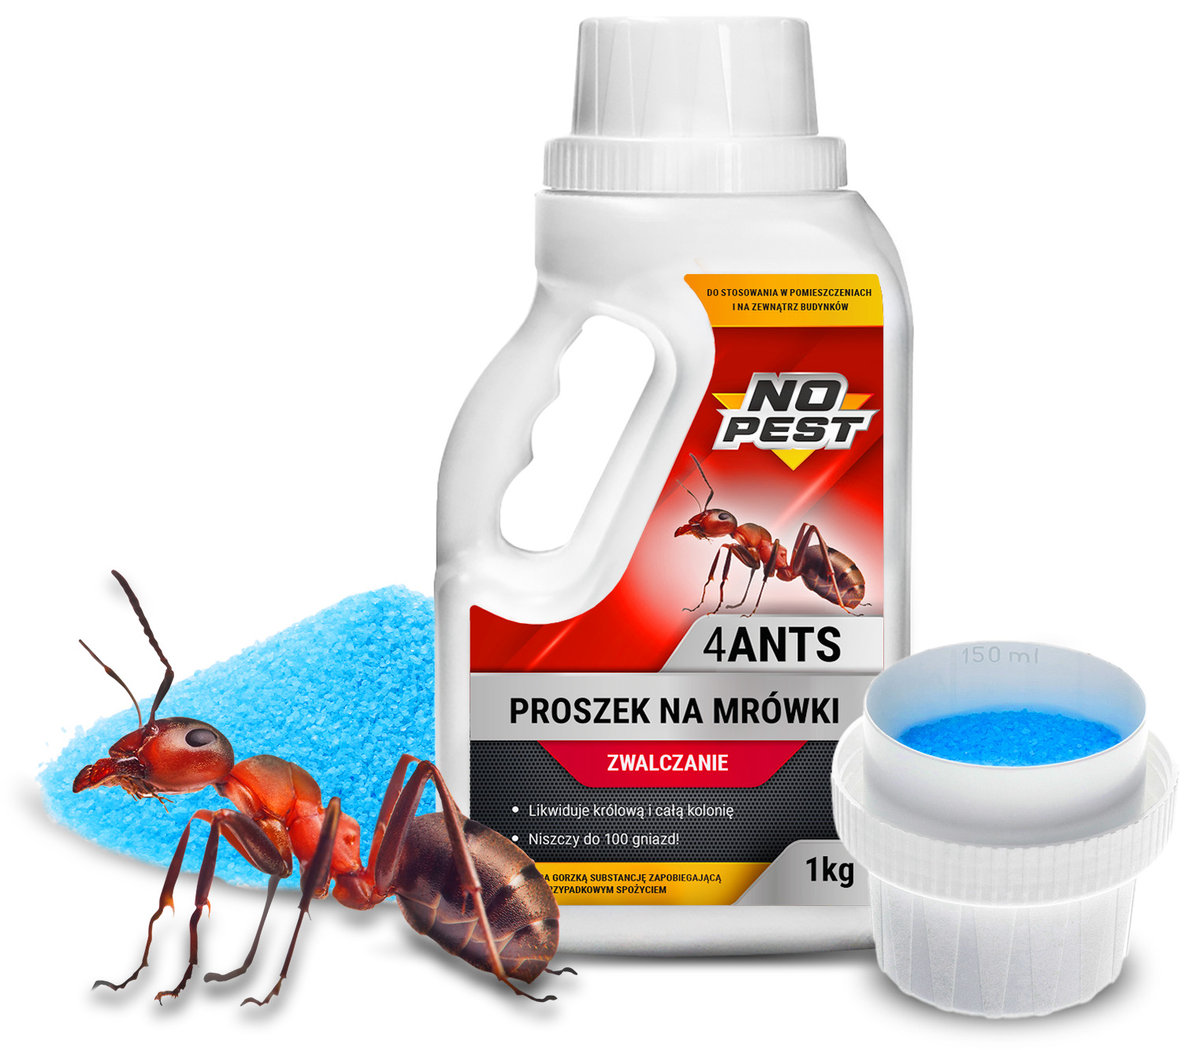 Bros Proszek na mrówki NO PEST 4 Ants granulat 1 KG. Środek na mrówki w domu, ogrodzie.